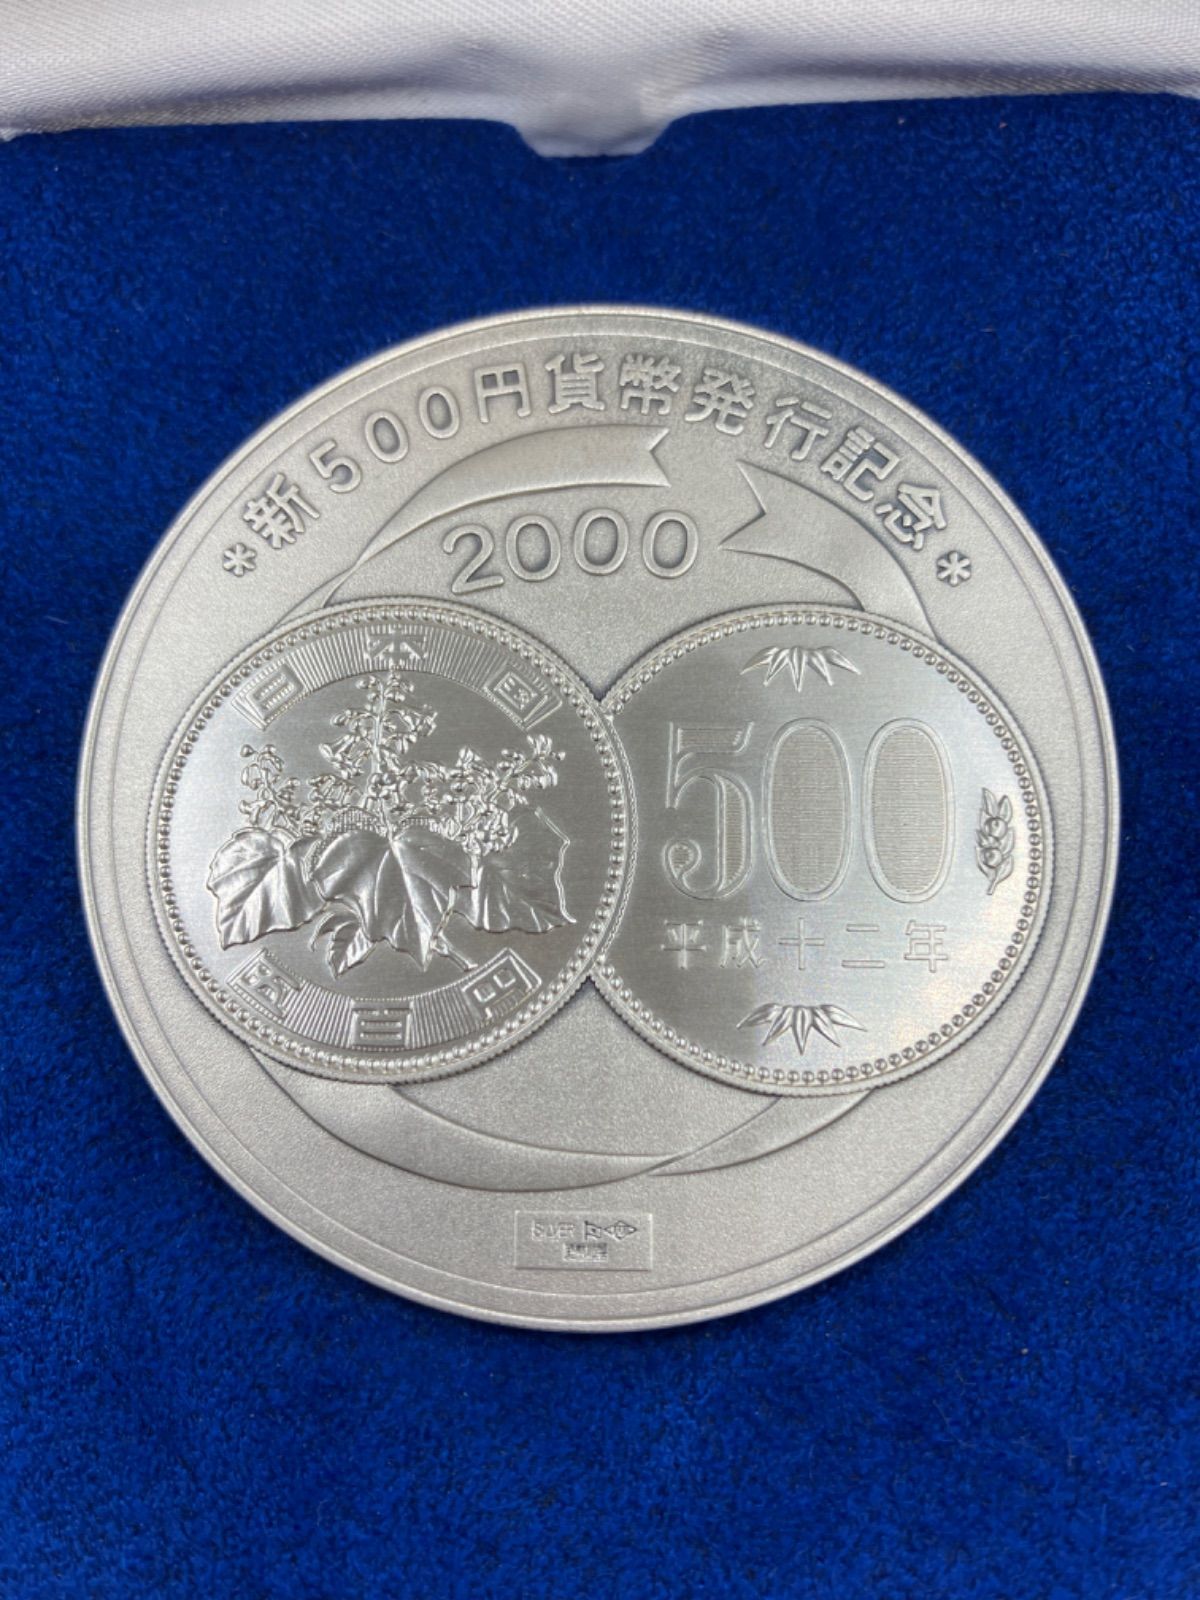 定価販売純銀 メダル 新500円貨幣発行記念 ケース付き 平成12年 造幣局製 134g 2000年 記念メダル シルバー SV1000 その他